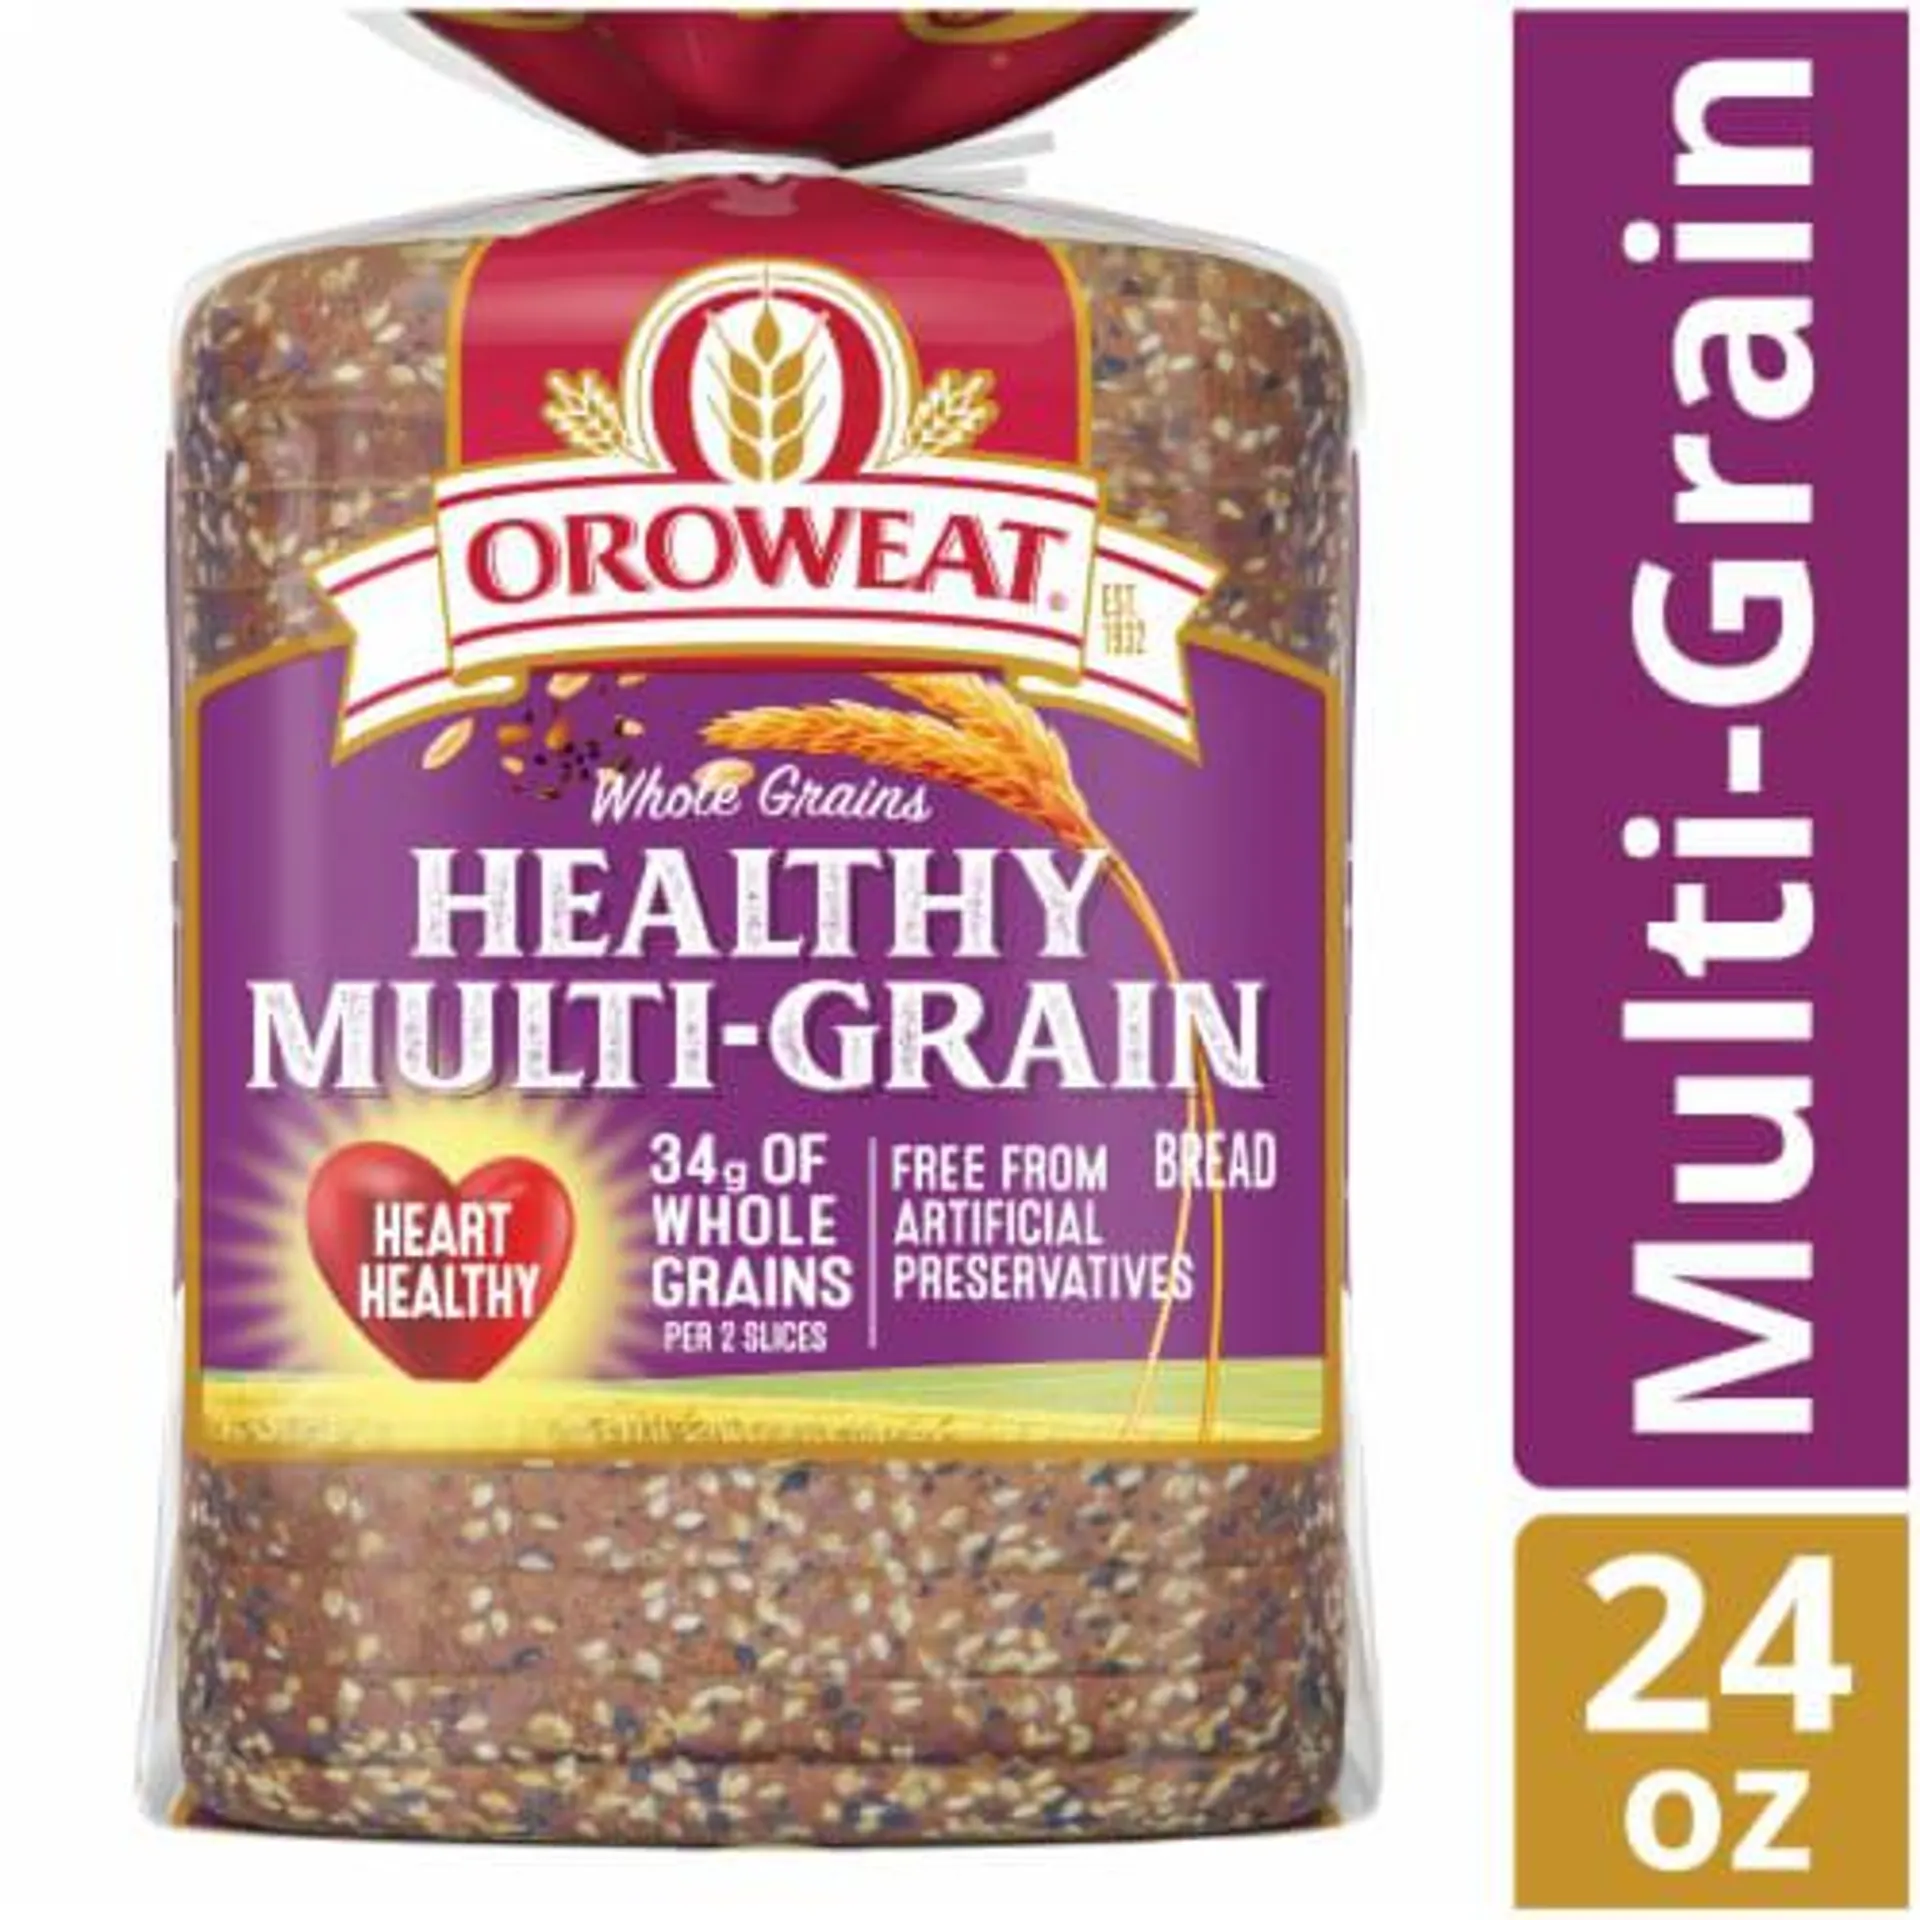 Oroweat Whole Grains Healthy Multi-Grain Sandwich Bread